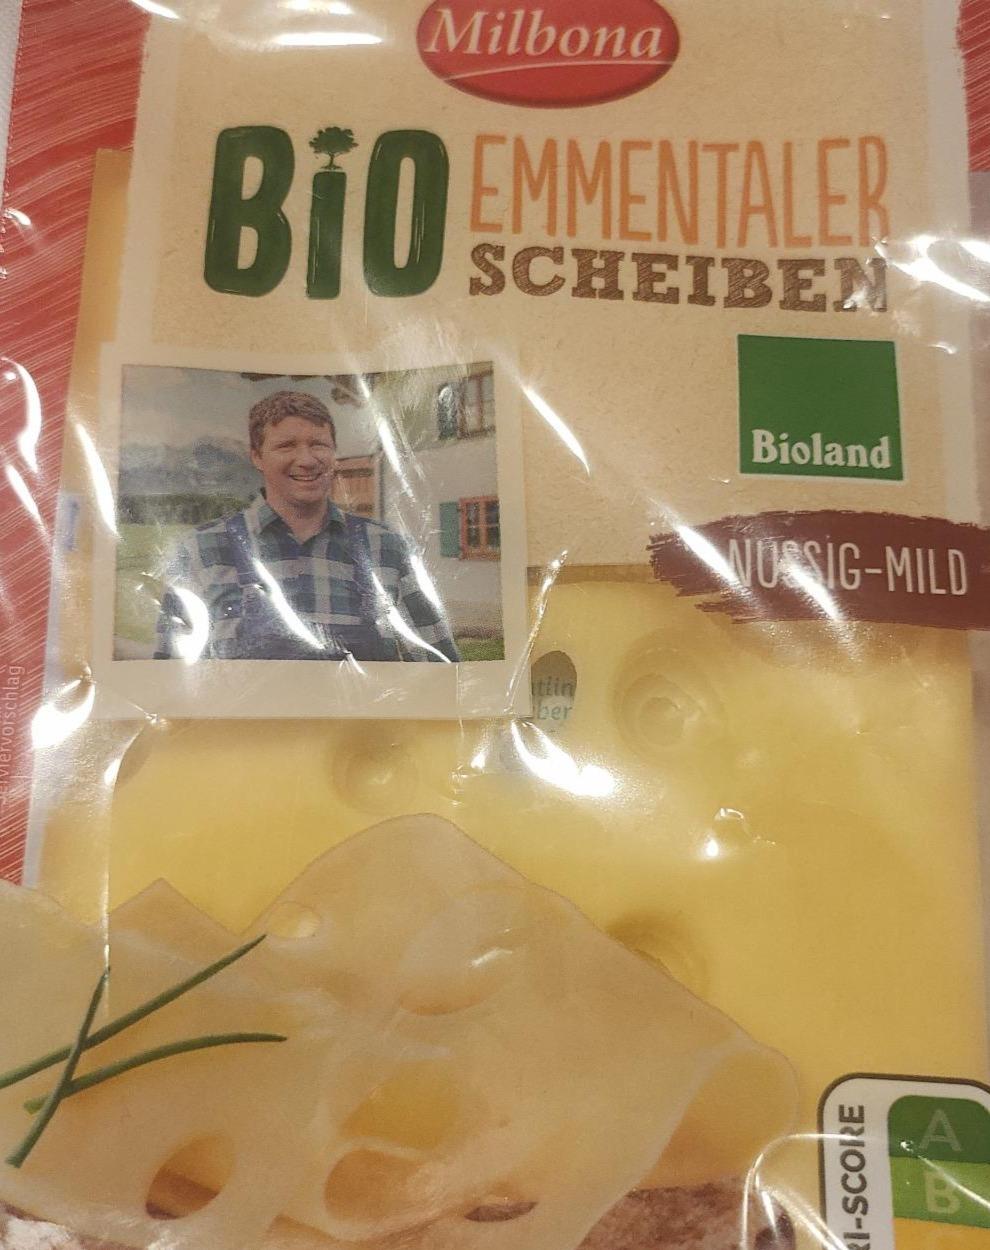 Zdjęcia - Emmentaler Scheiben nussig mild Milbona